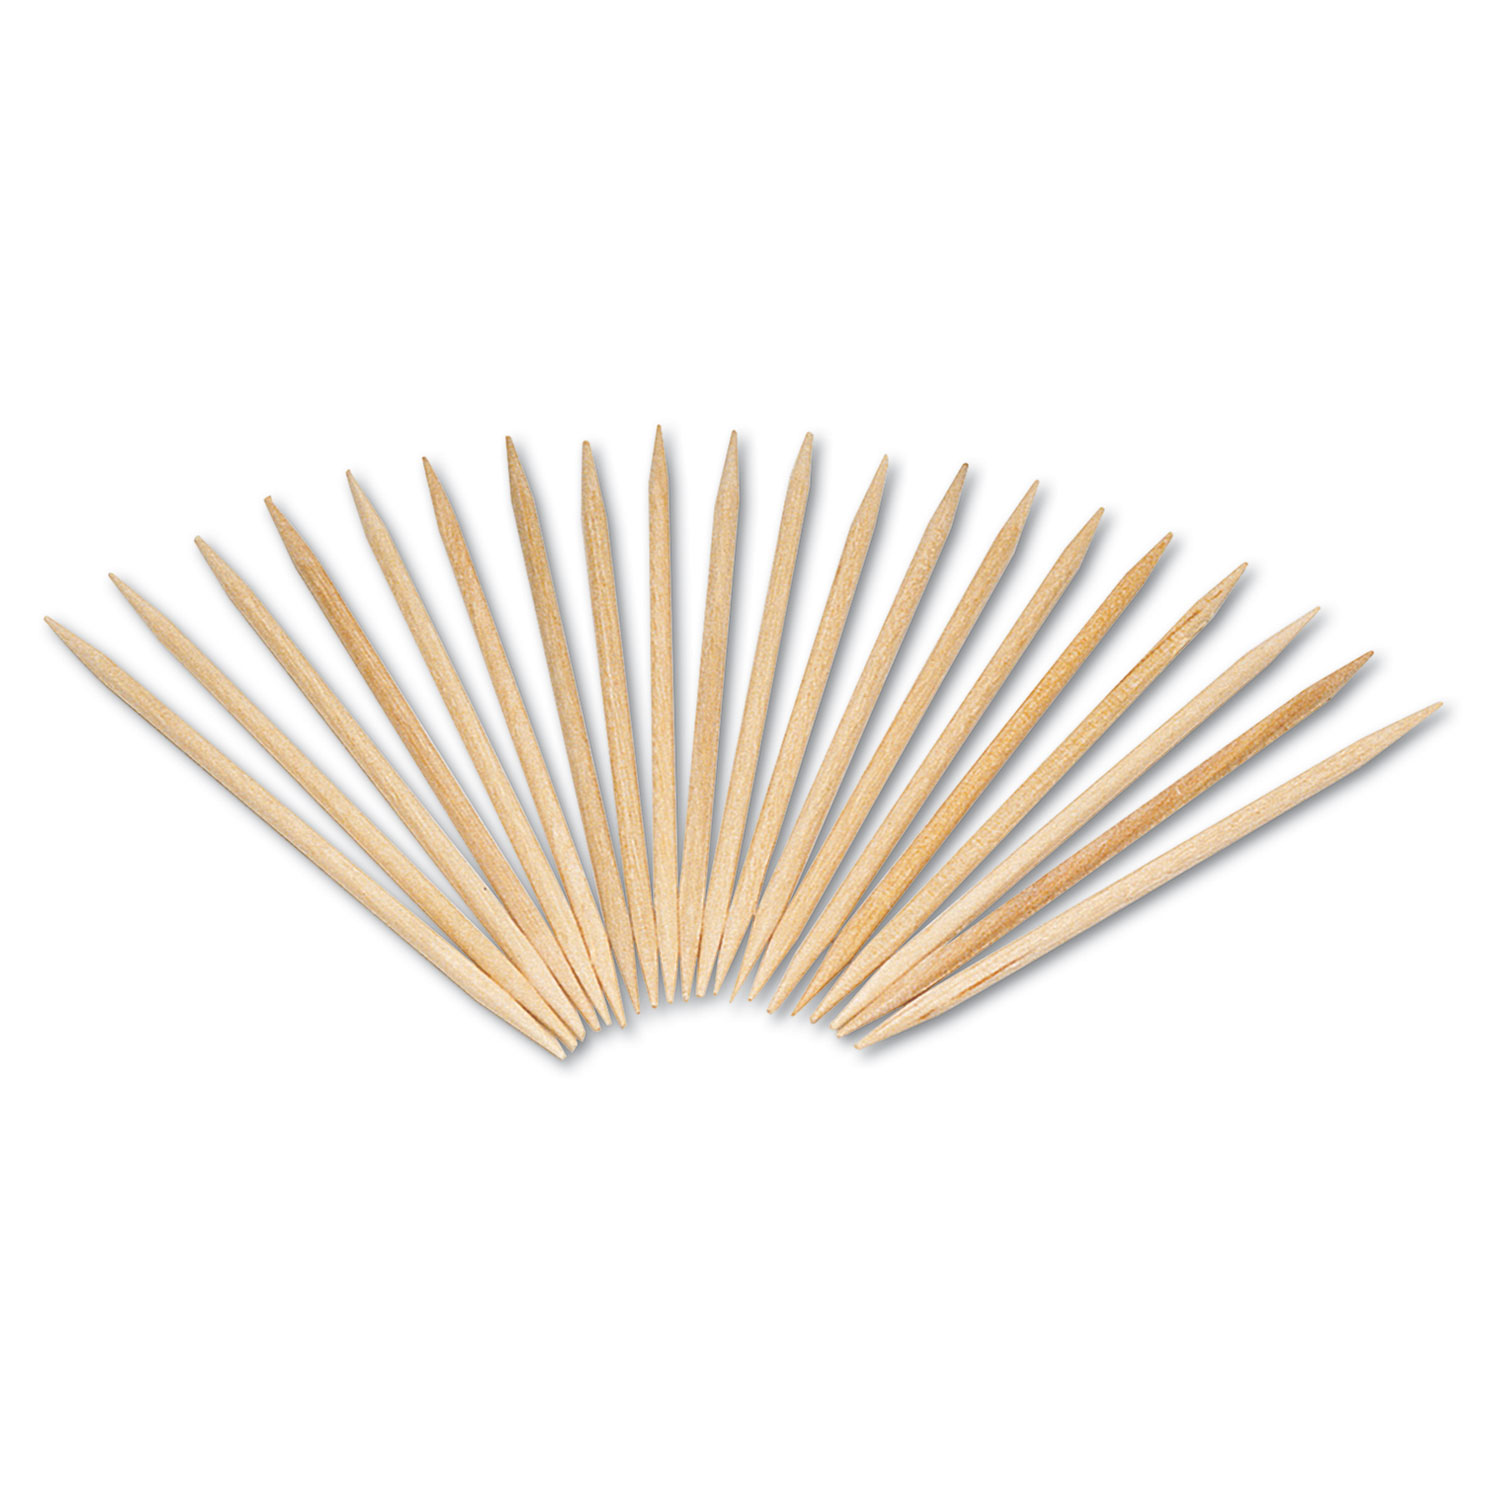 Round Wood Toothpicks, 2 1/2, Natural, 19200/Carton